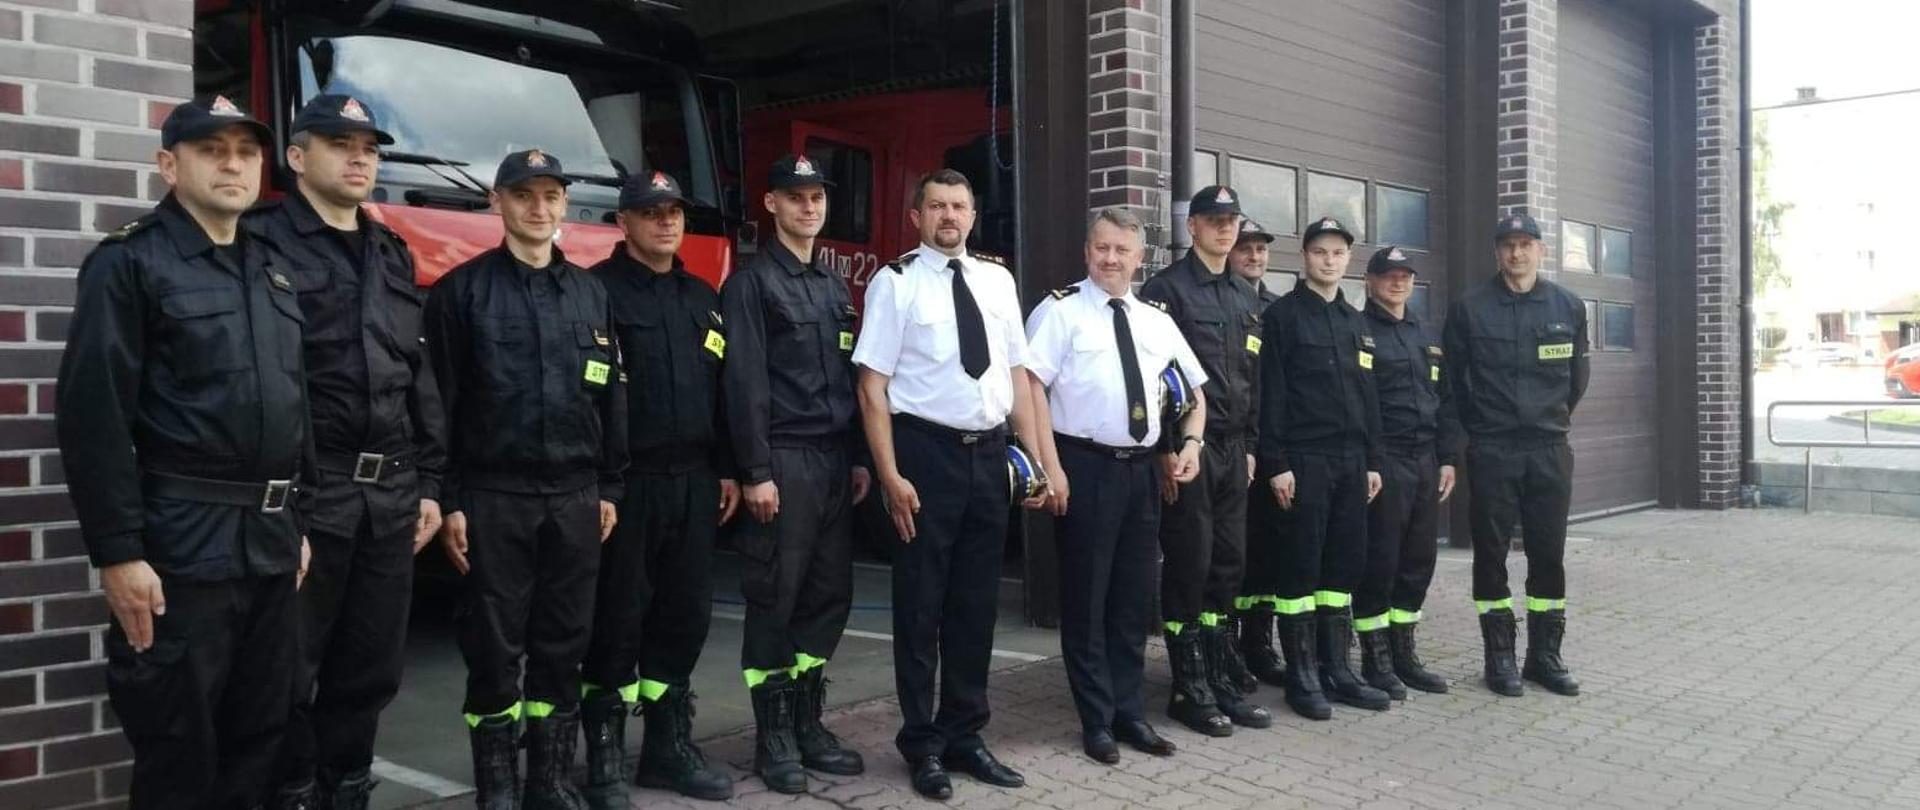 Wizyta Mazowieckiego Komendanta Wojewódzkiego. Strażacy stojący w szeregu na tle strażnicy.